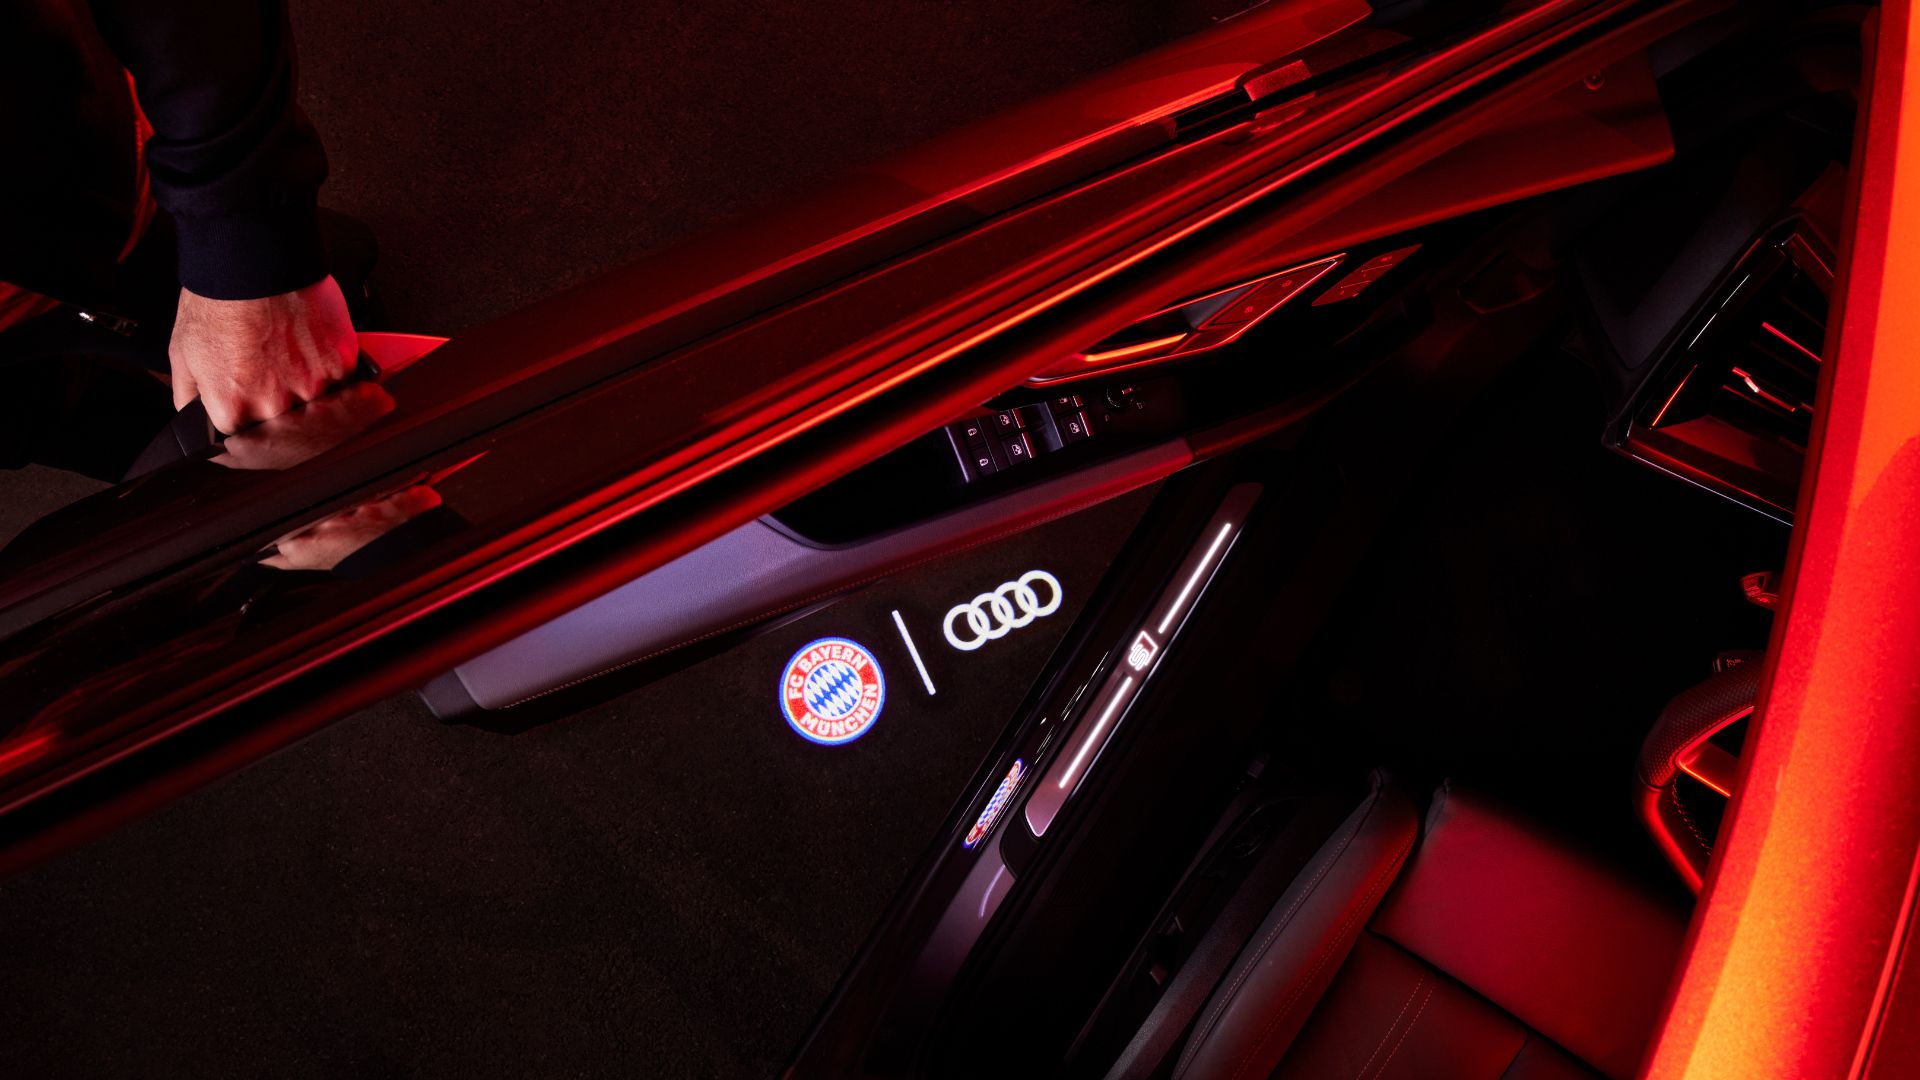 Einstiegs-LED Logo FC Bayern München und Audi Ringe > Original